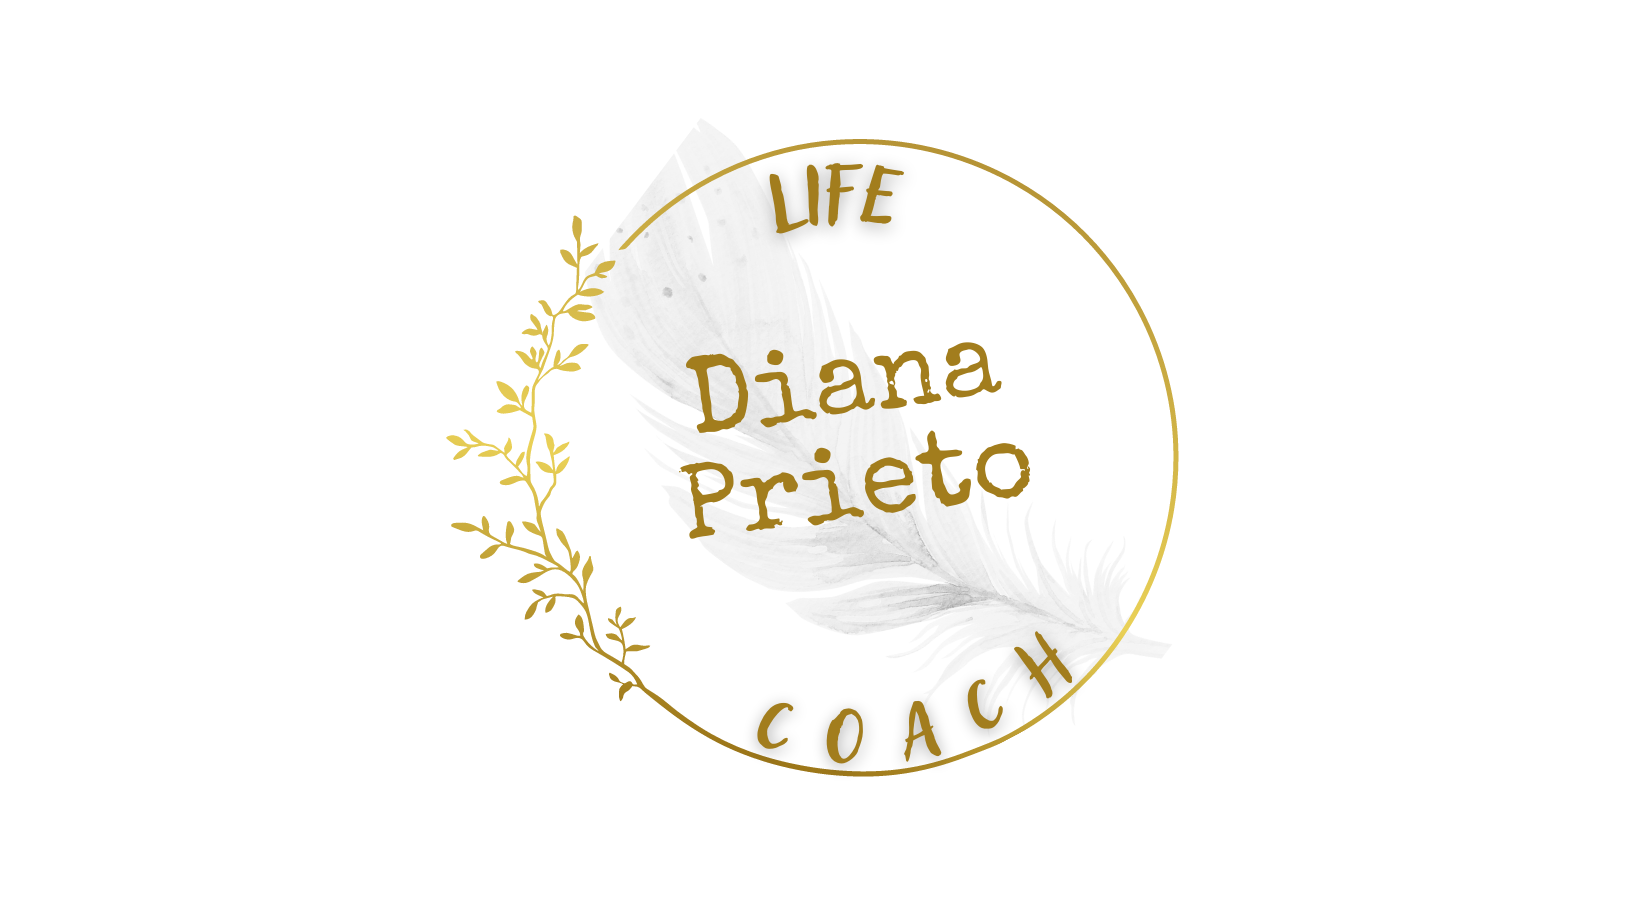 Diana Prieto Life Coach